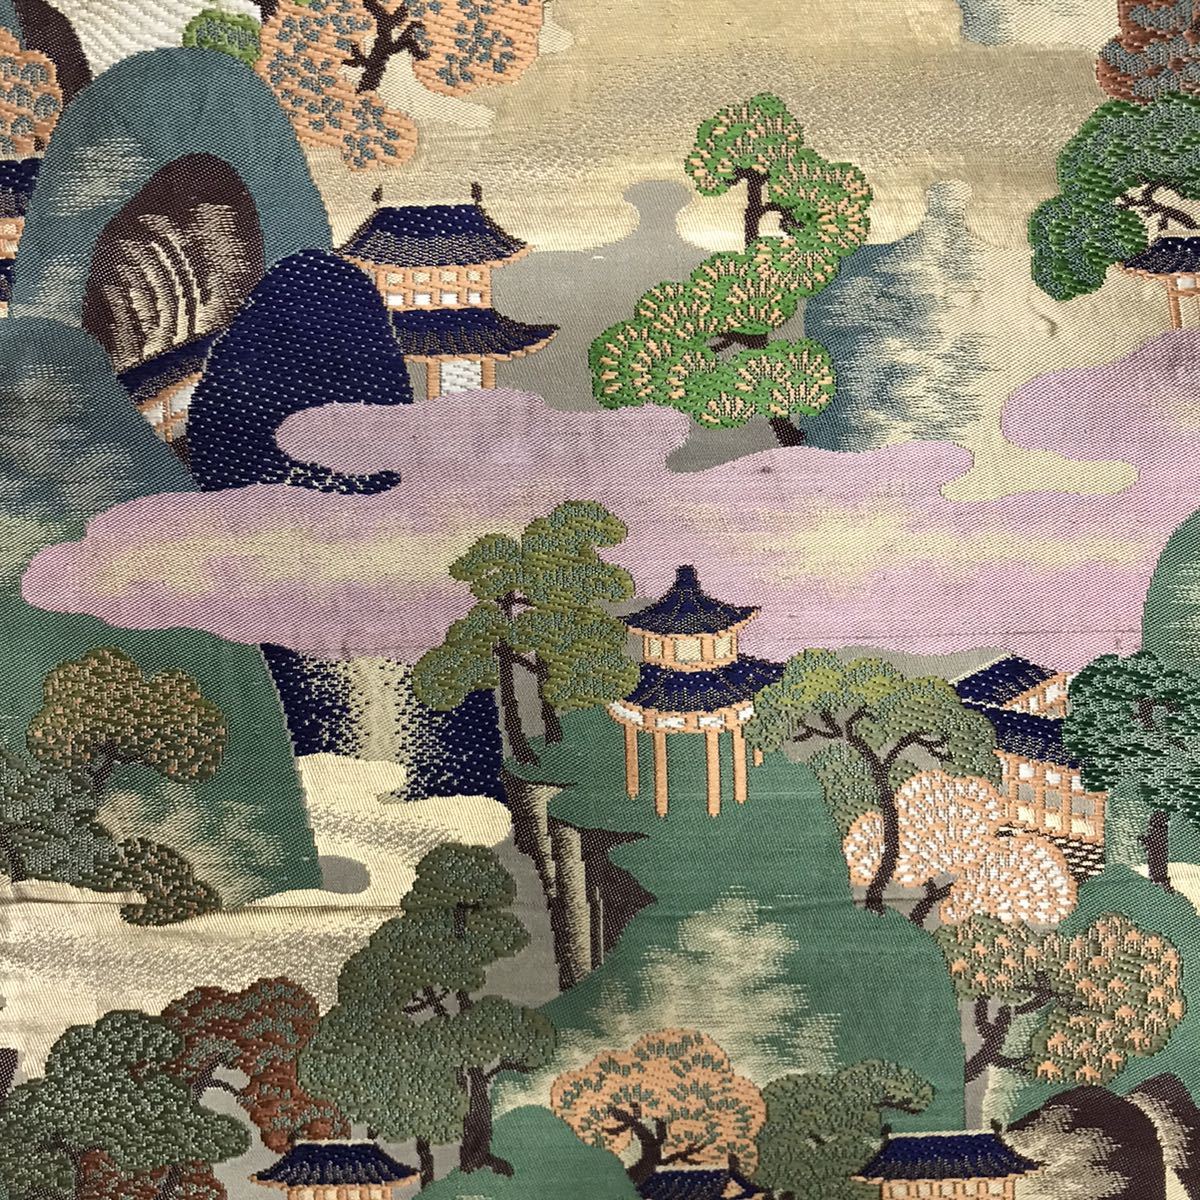 B109 maru obi пейзаж map переделка рукоделие ткань украшение ткань времена . старый . старый ткань античный гобелен инструмент для проволоки wa